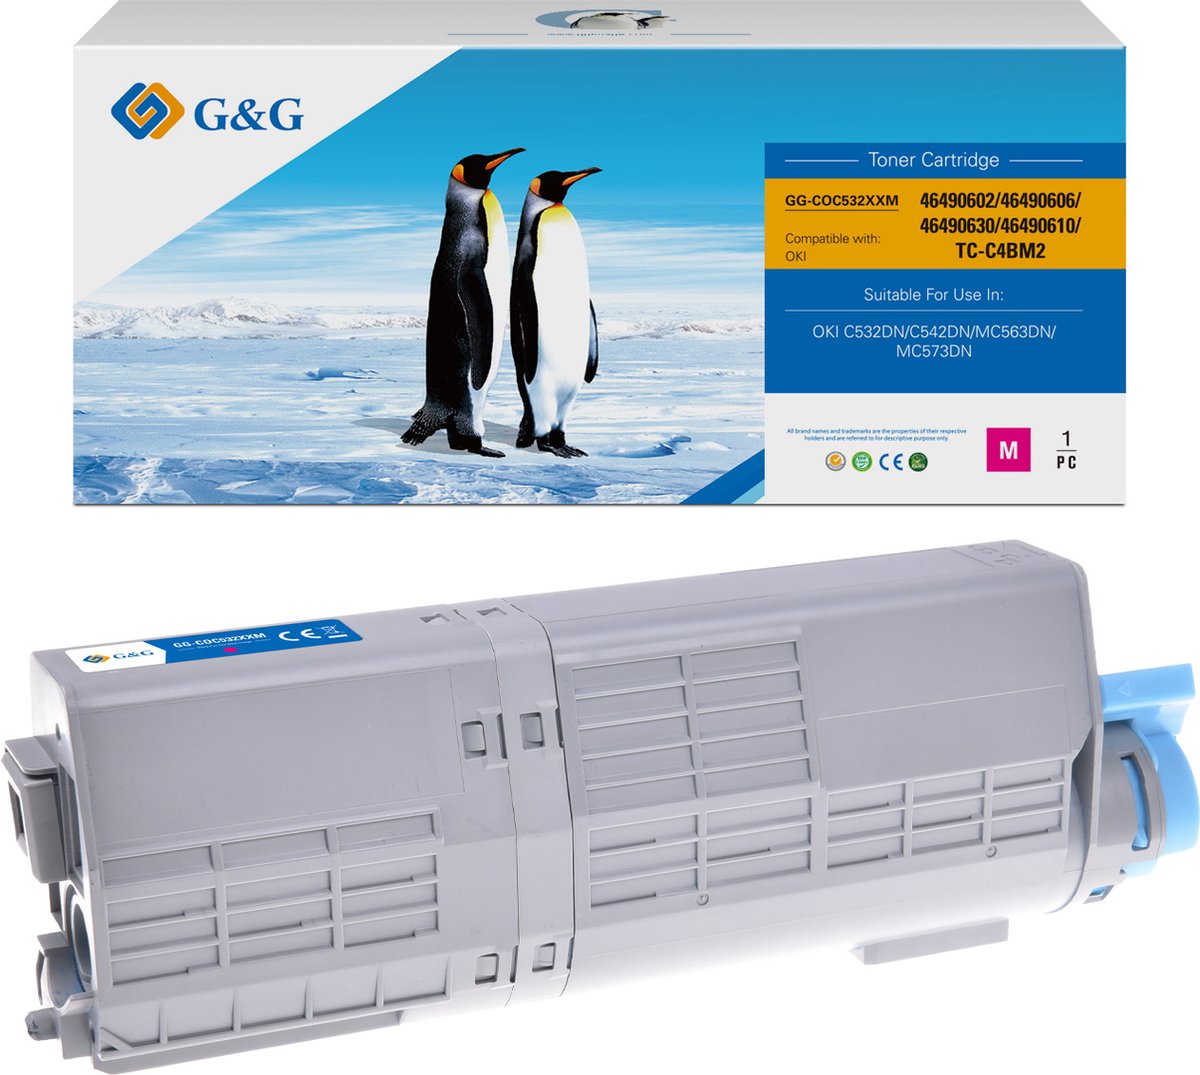 G&G XXL toner compatibel met OKI 46490606 / 46490402 Tonercartridge magenta Huismerk